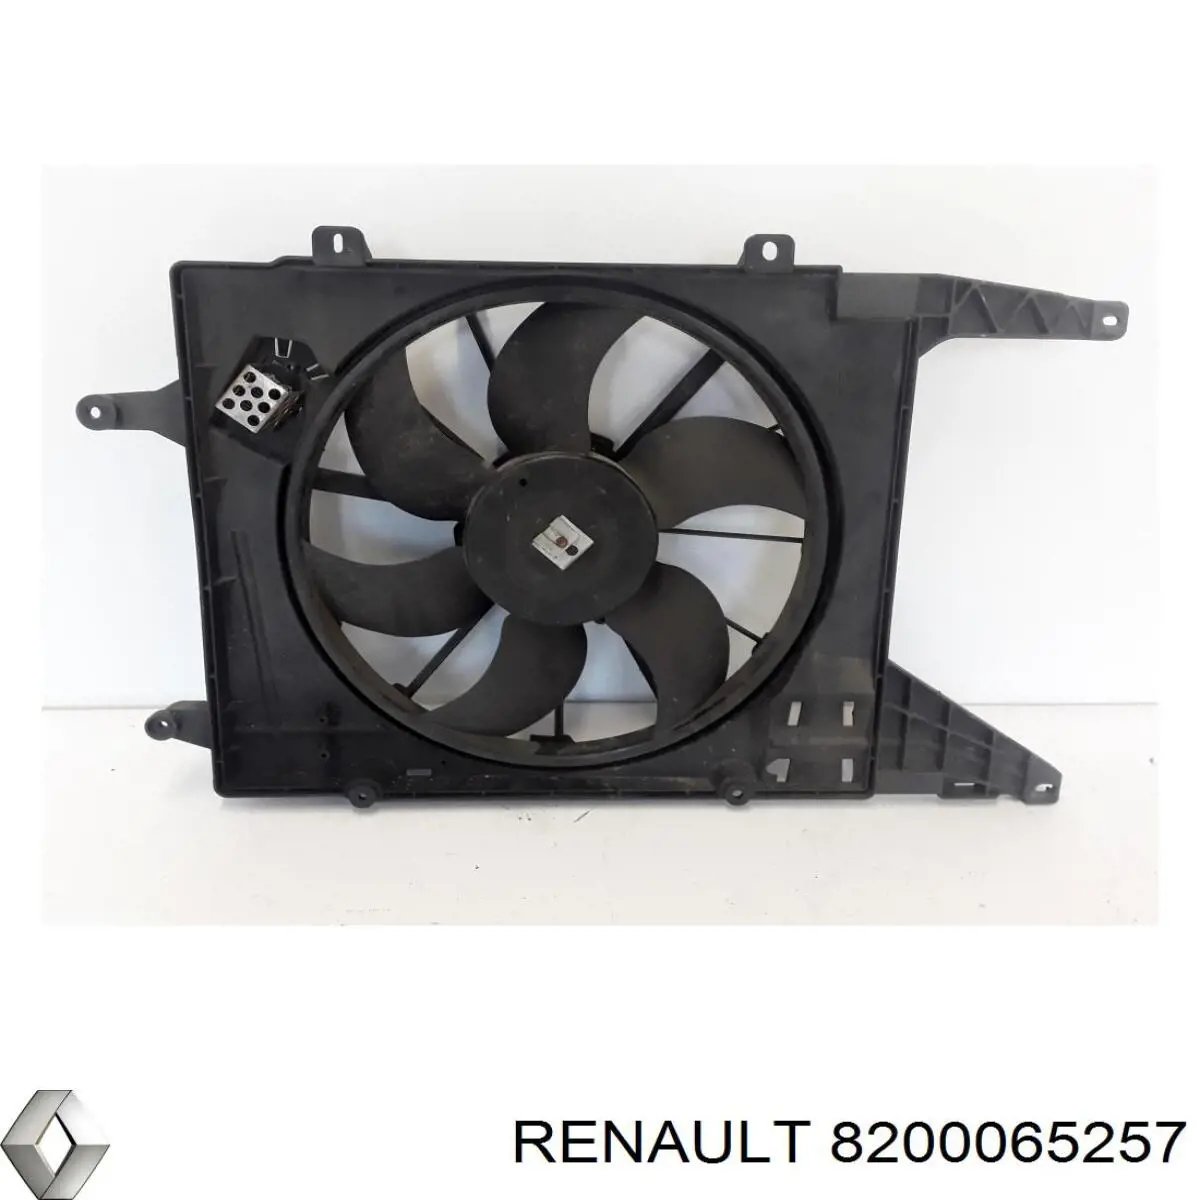 Difusor de radiador, ventilador de refrigeración, condensador del aire acondicionado, completo con motor y rodete para Renault Megane (BA0)